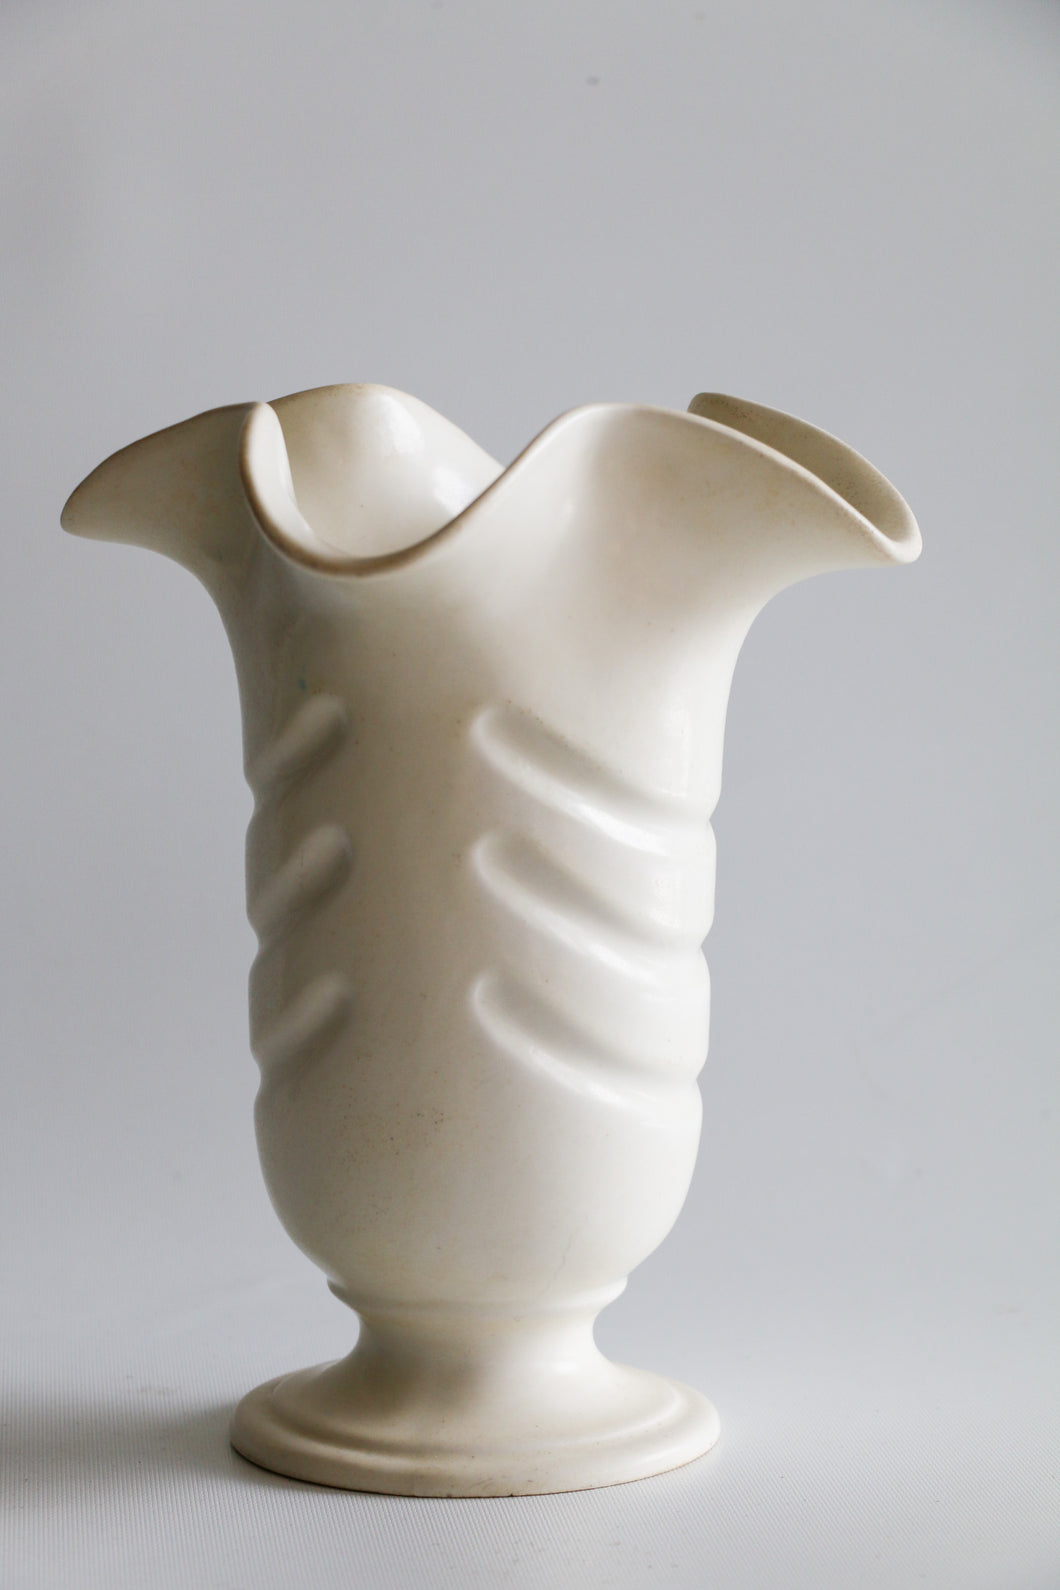 Mid Century Modern Vase